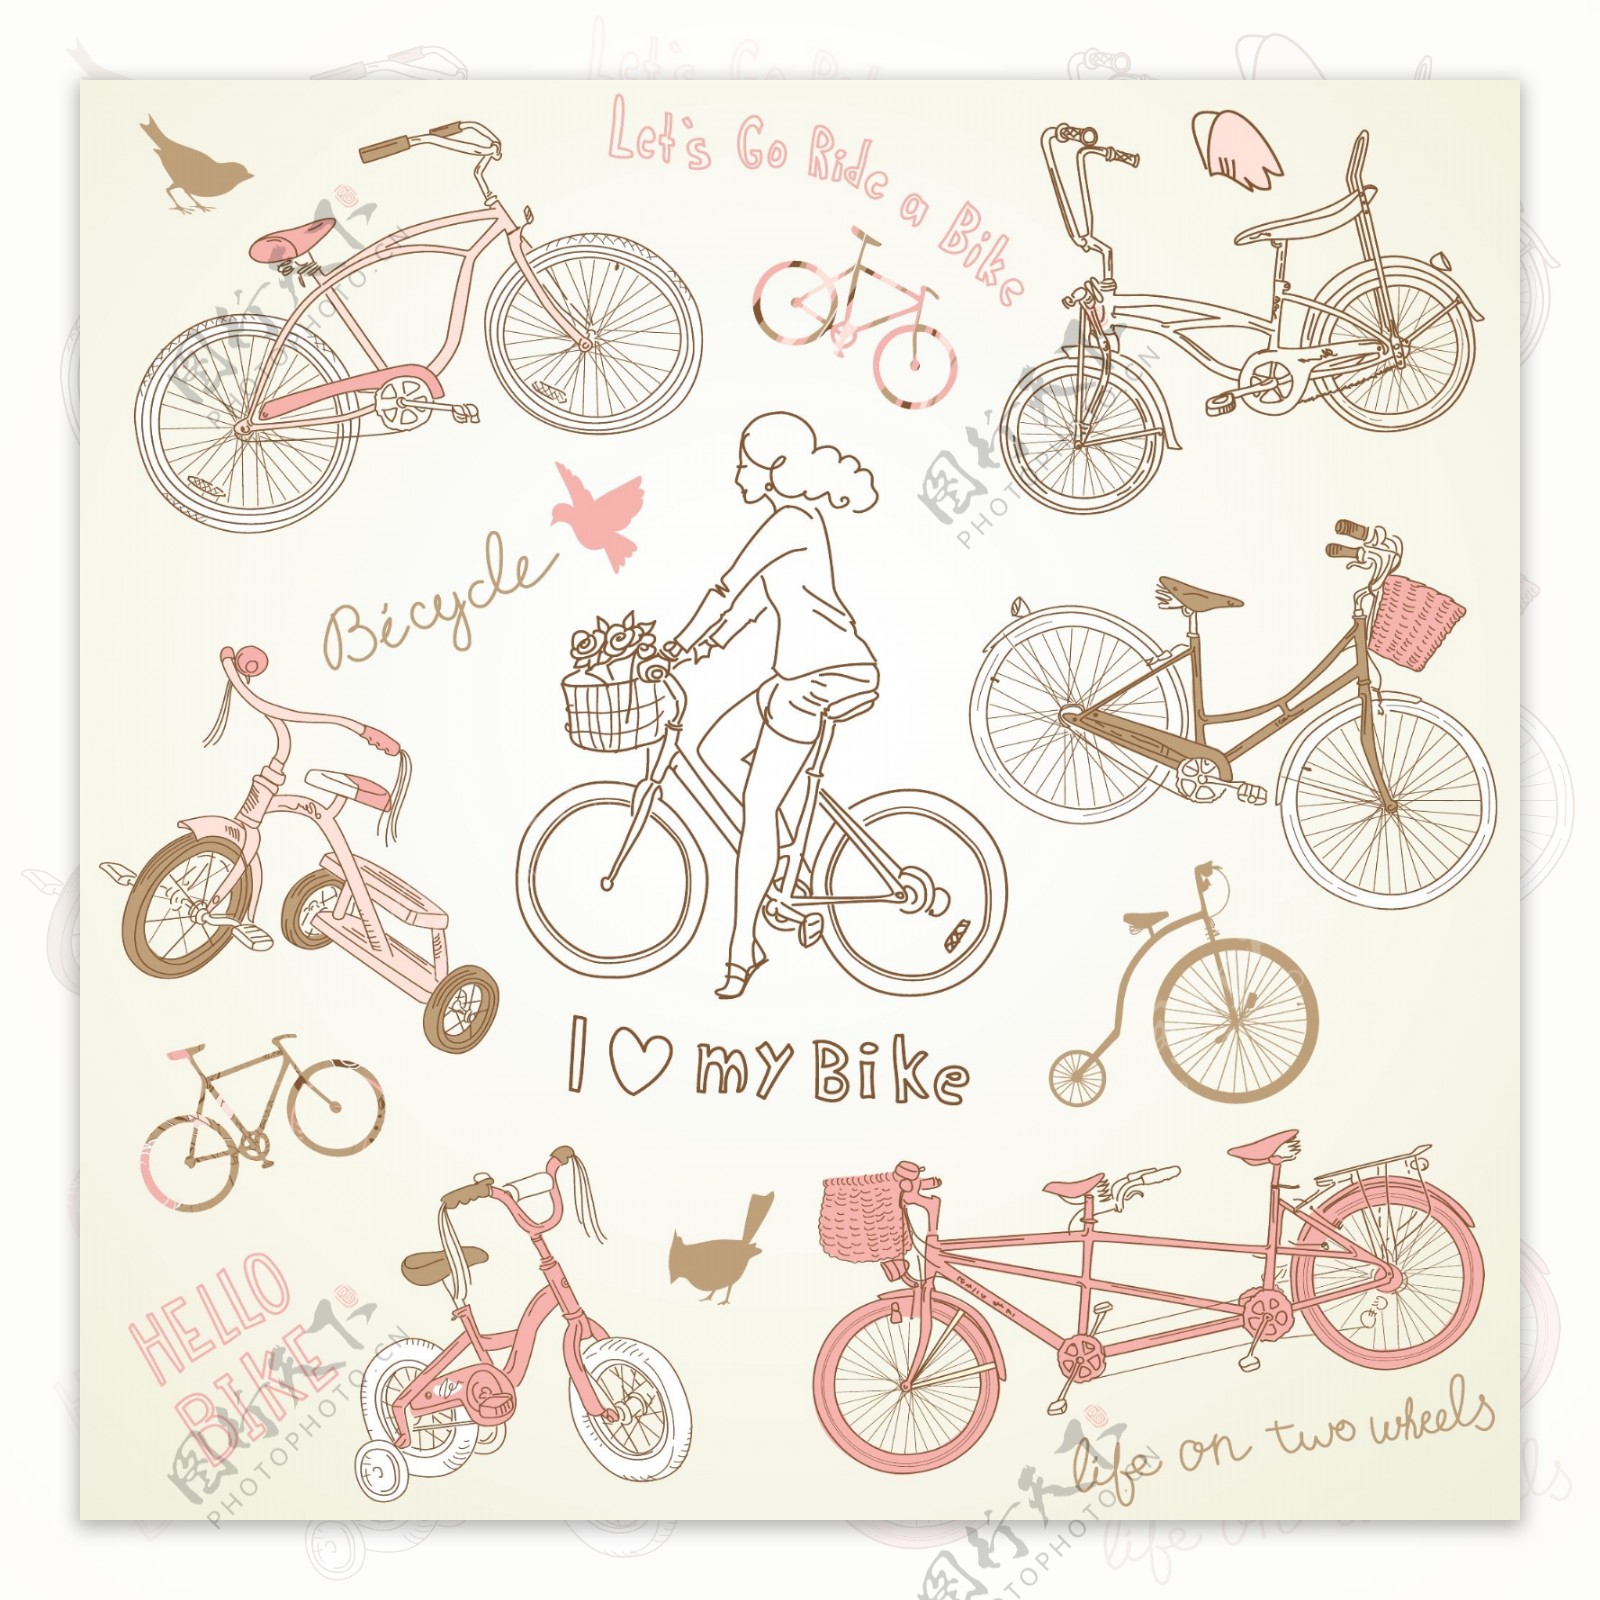 老式自行车和一个漂亮的女孩骑自行车